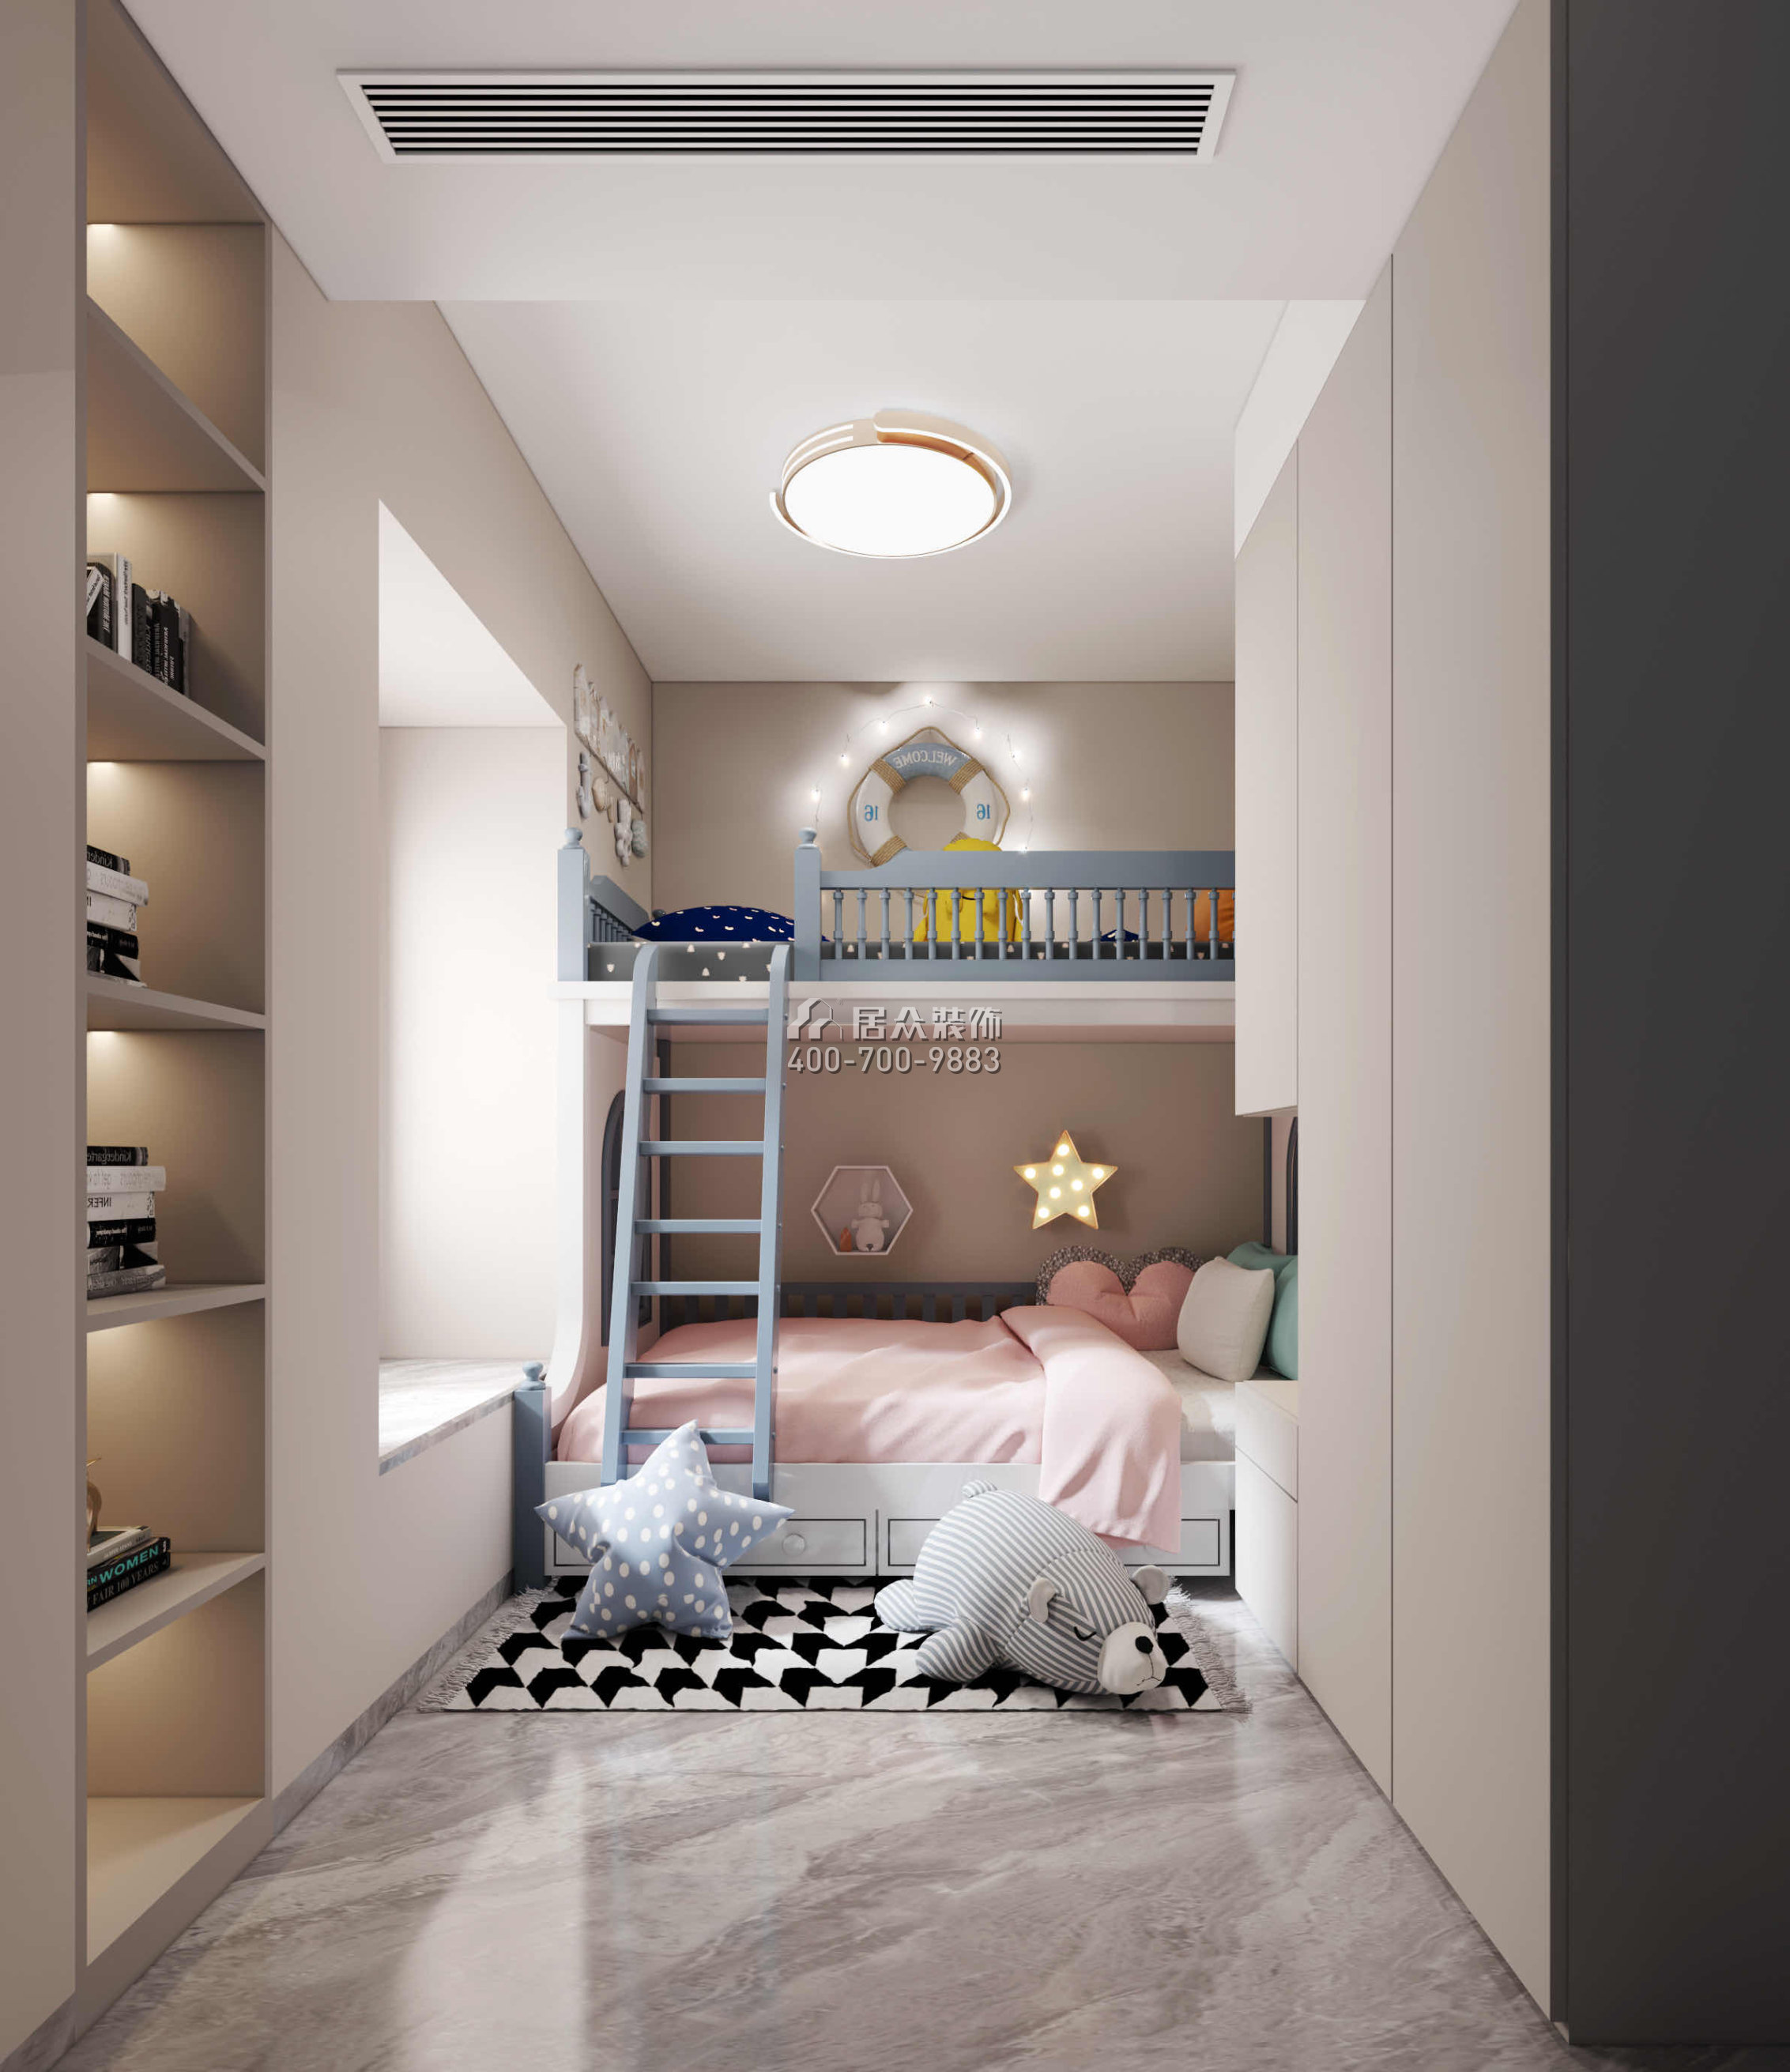 碧海红树园120平方米现代简约风格平层户型儿童房装修效果图